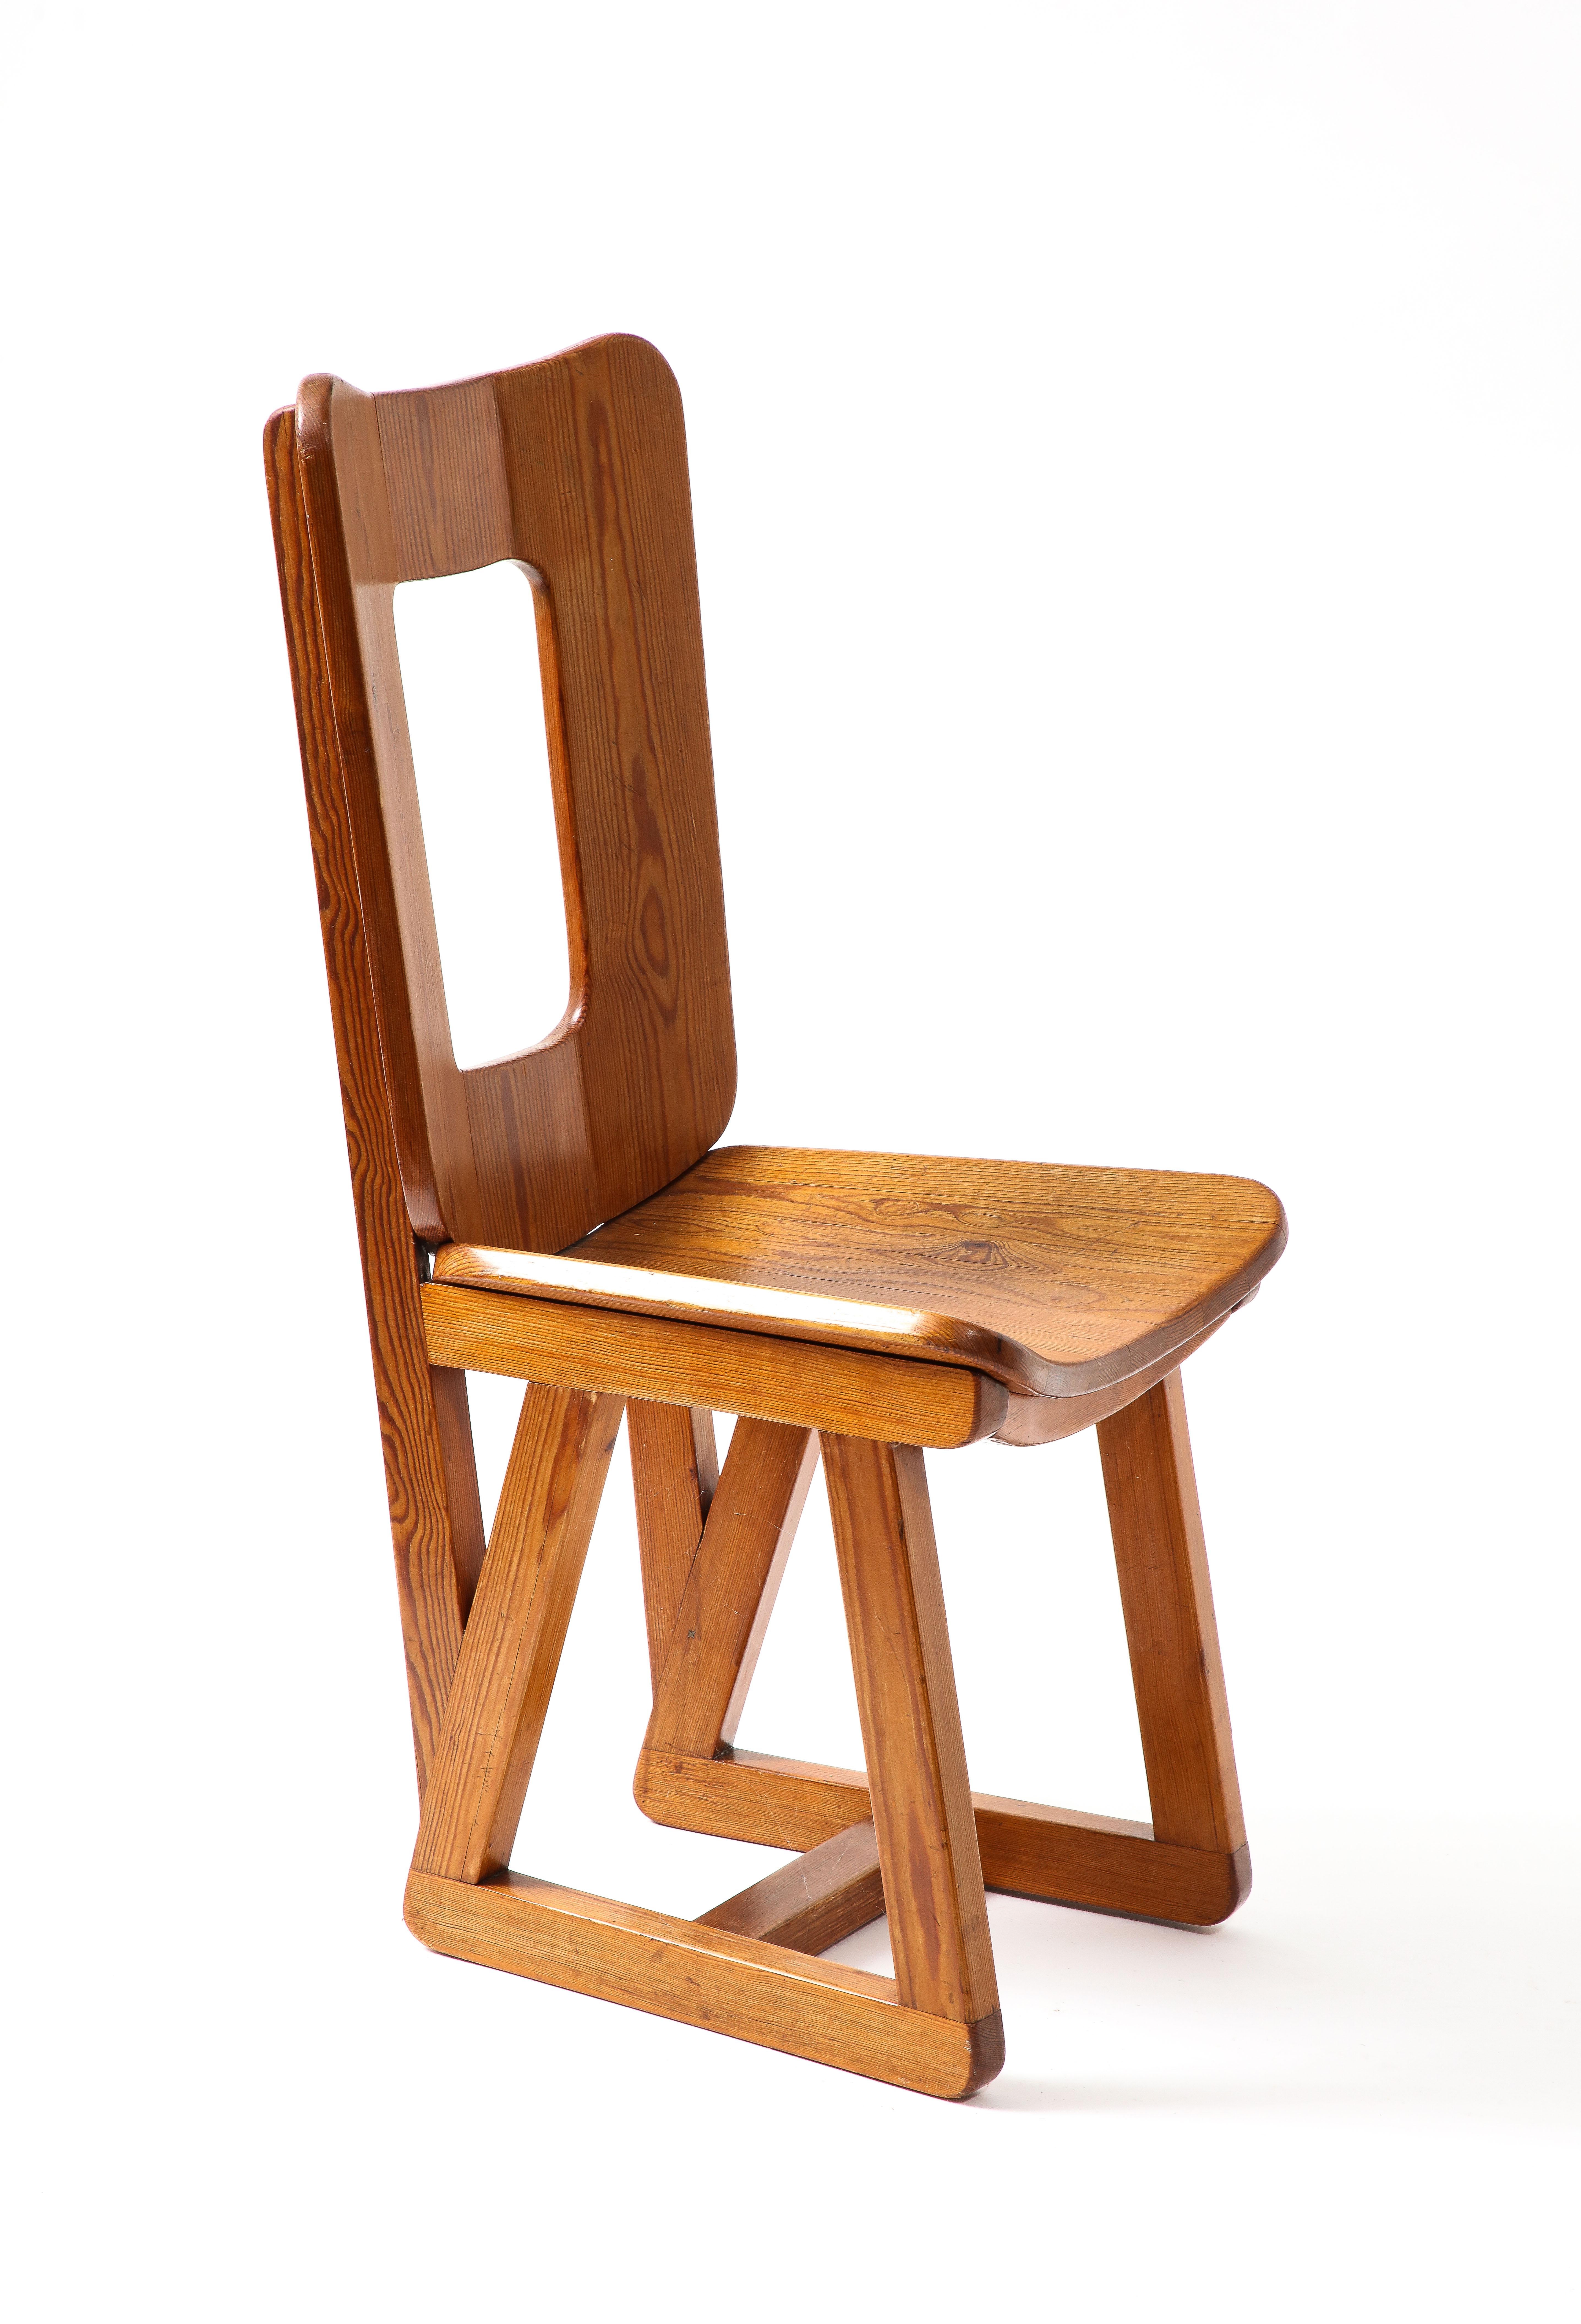 Maison Regain Side Chair, France 1960s For Sale 2